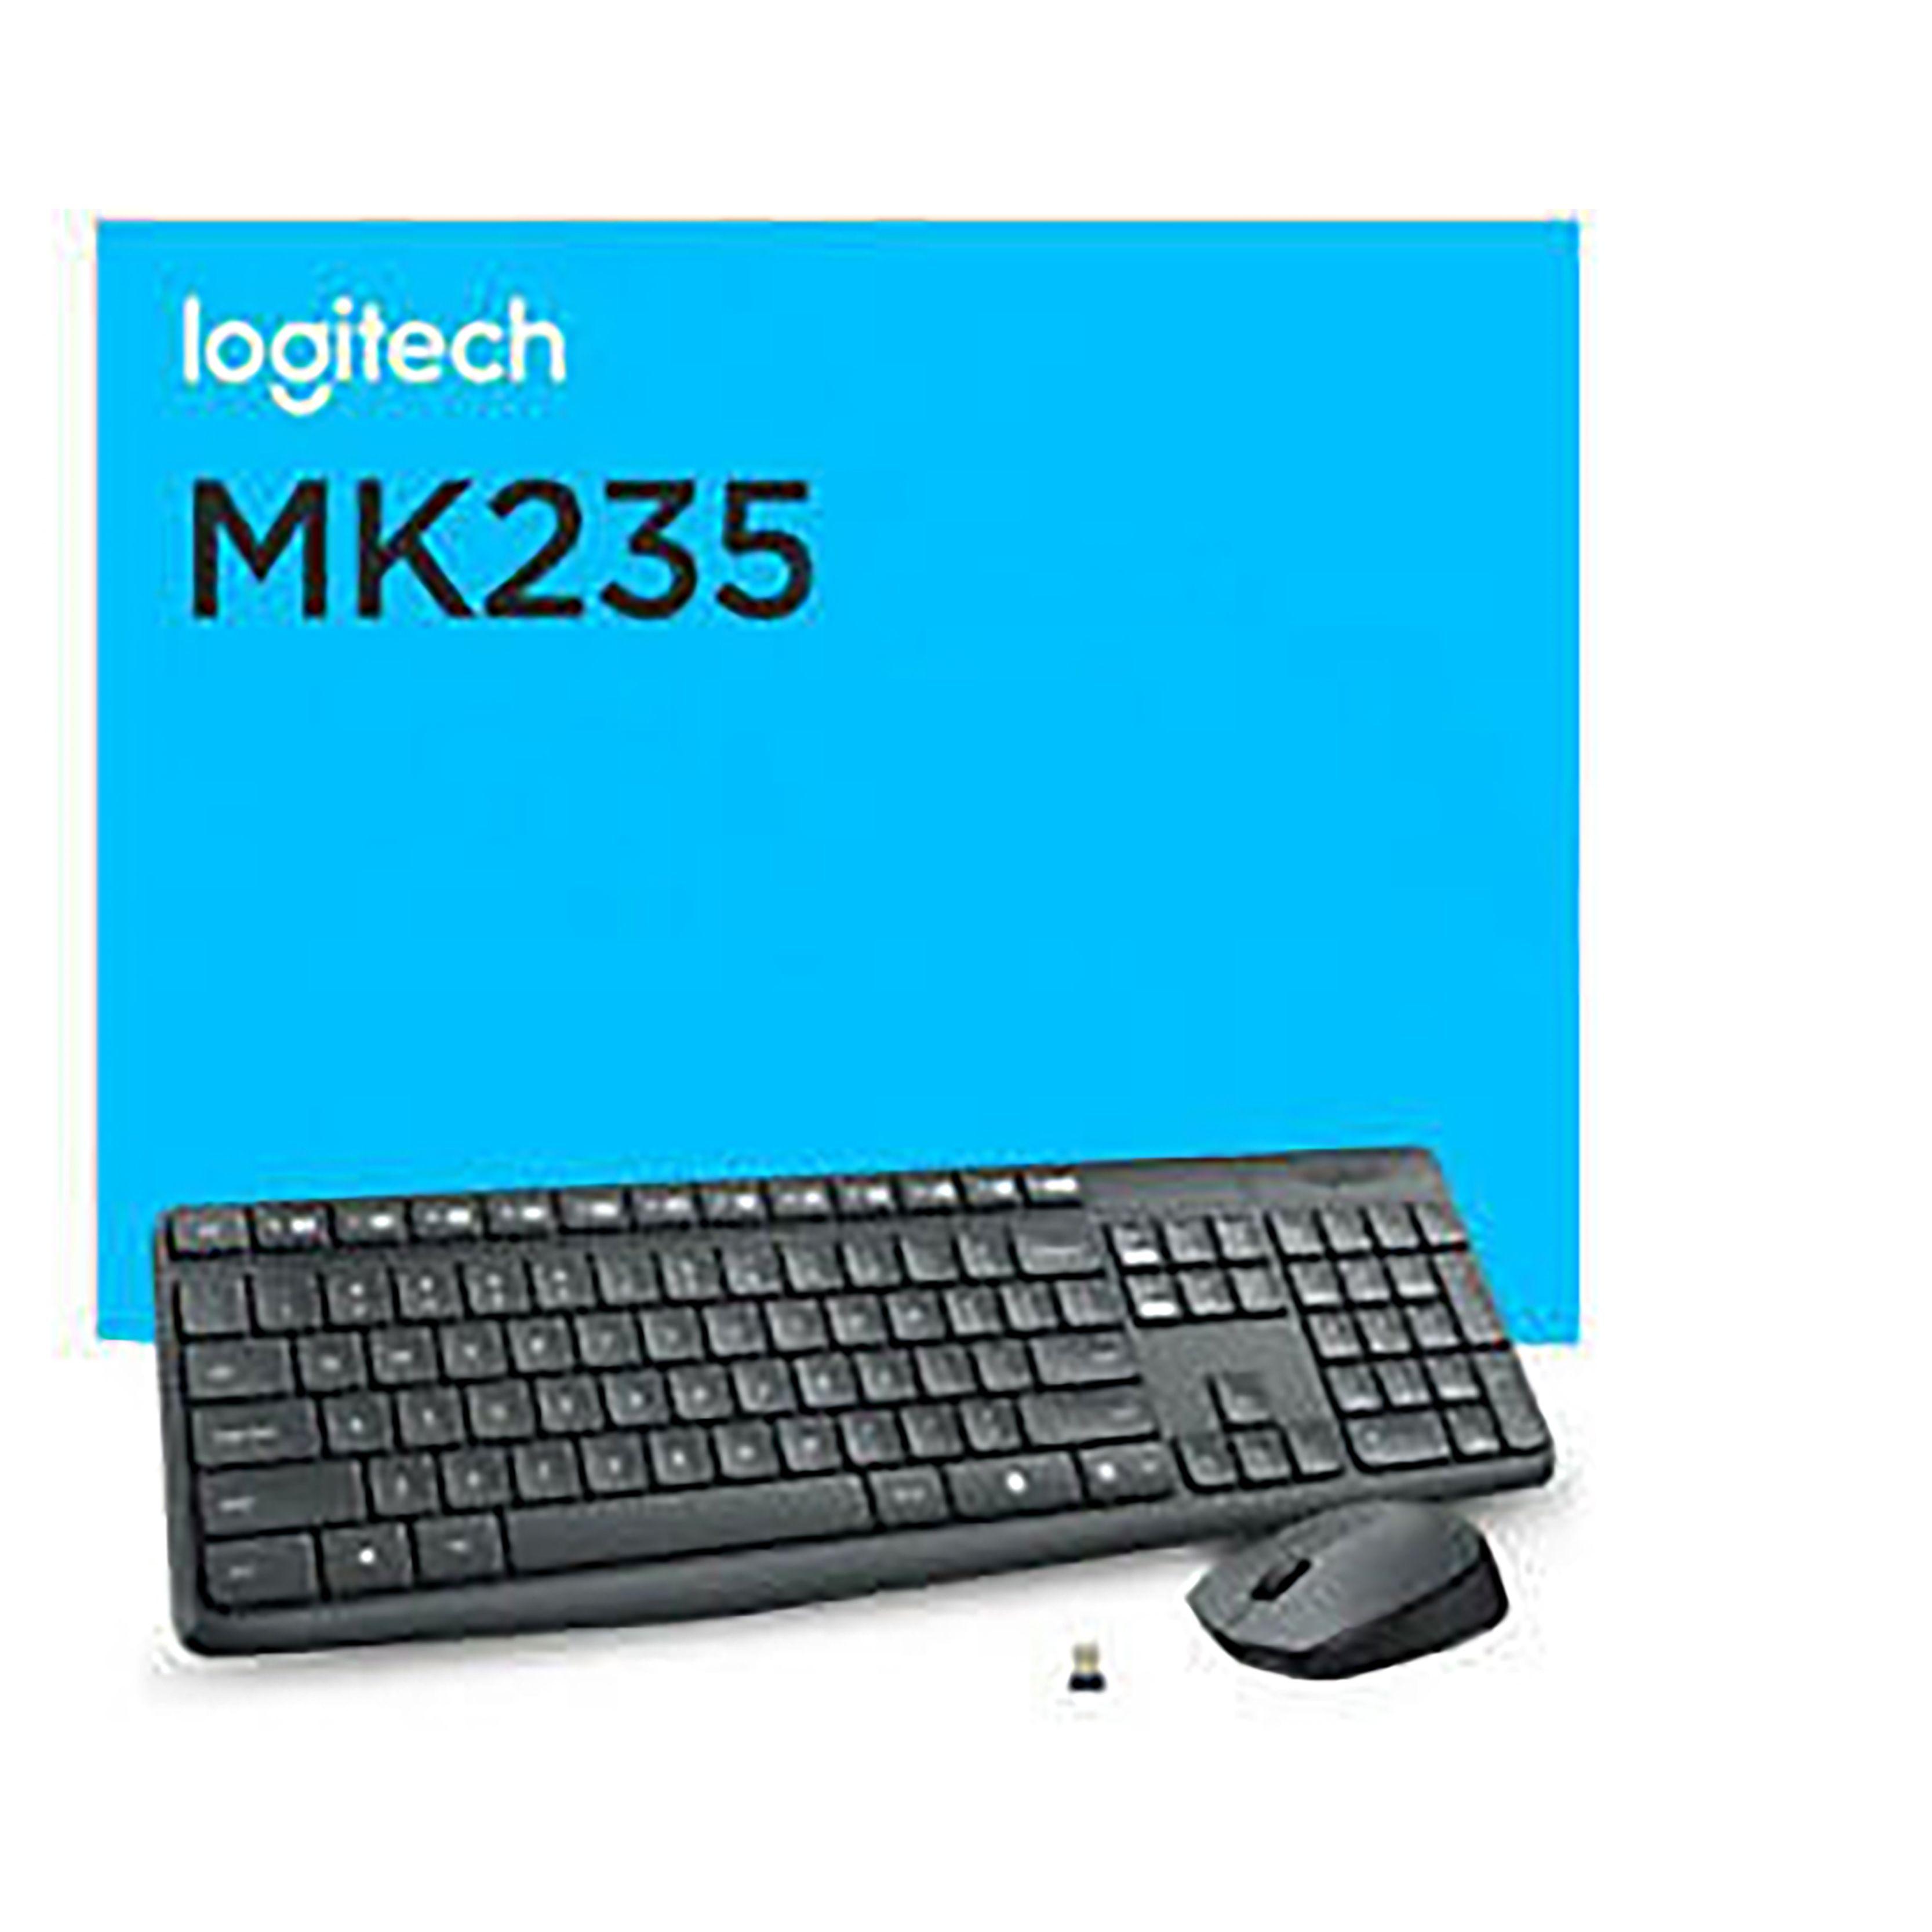 logitech mk235 wireless combo set price nepal